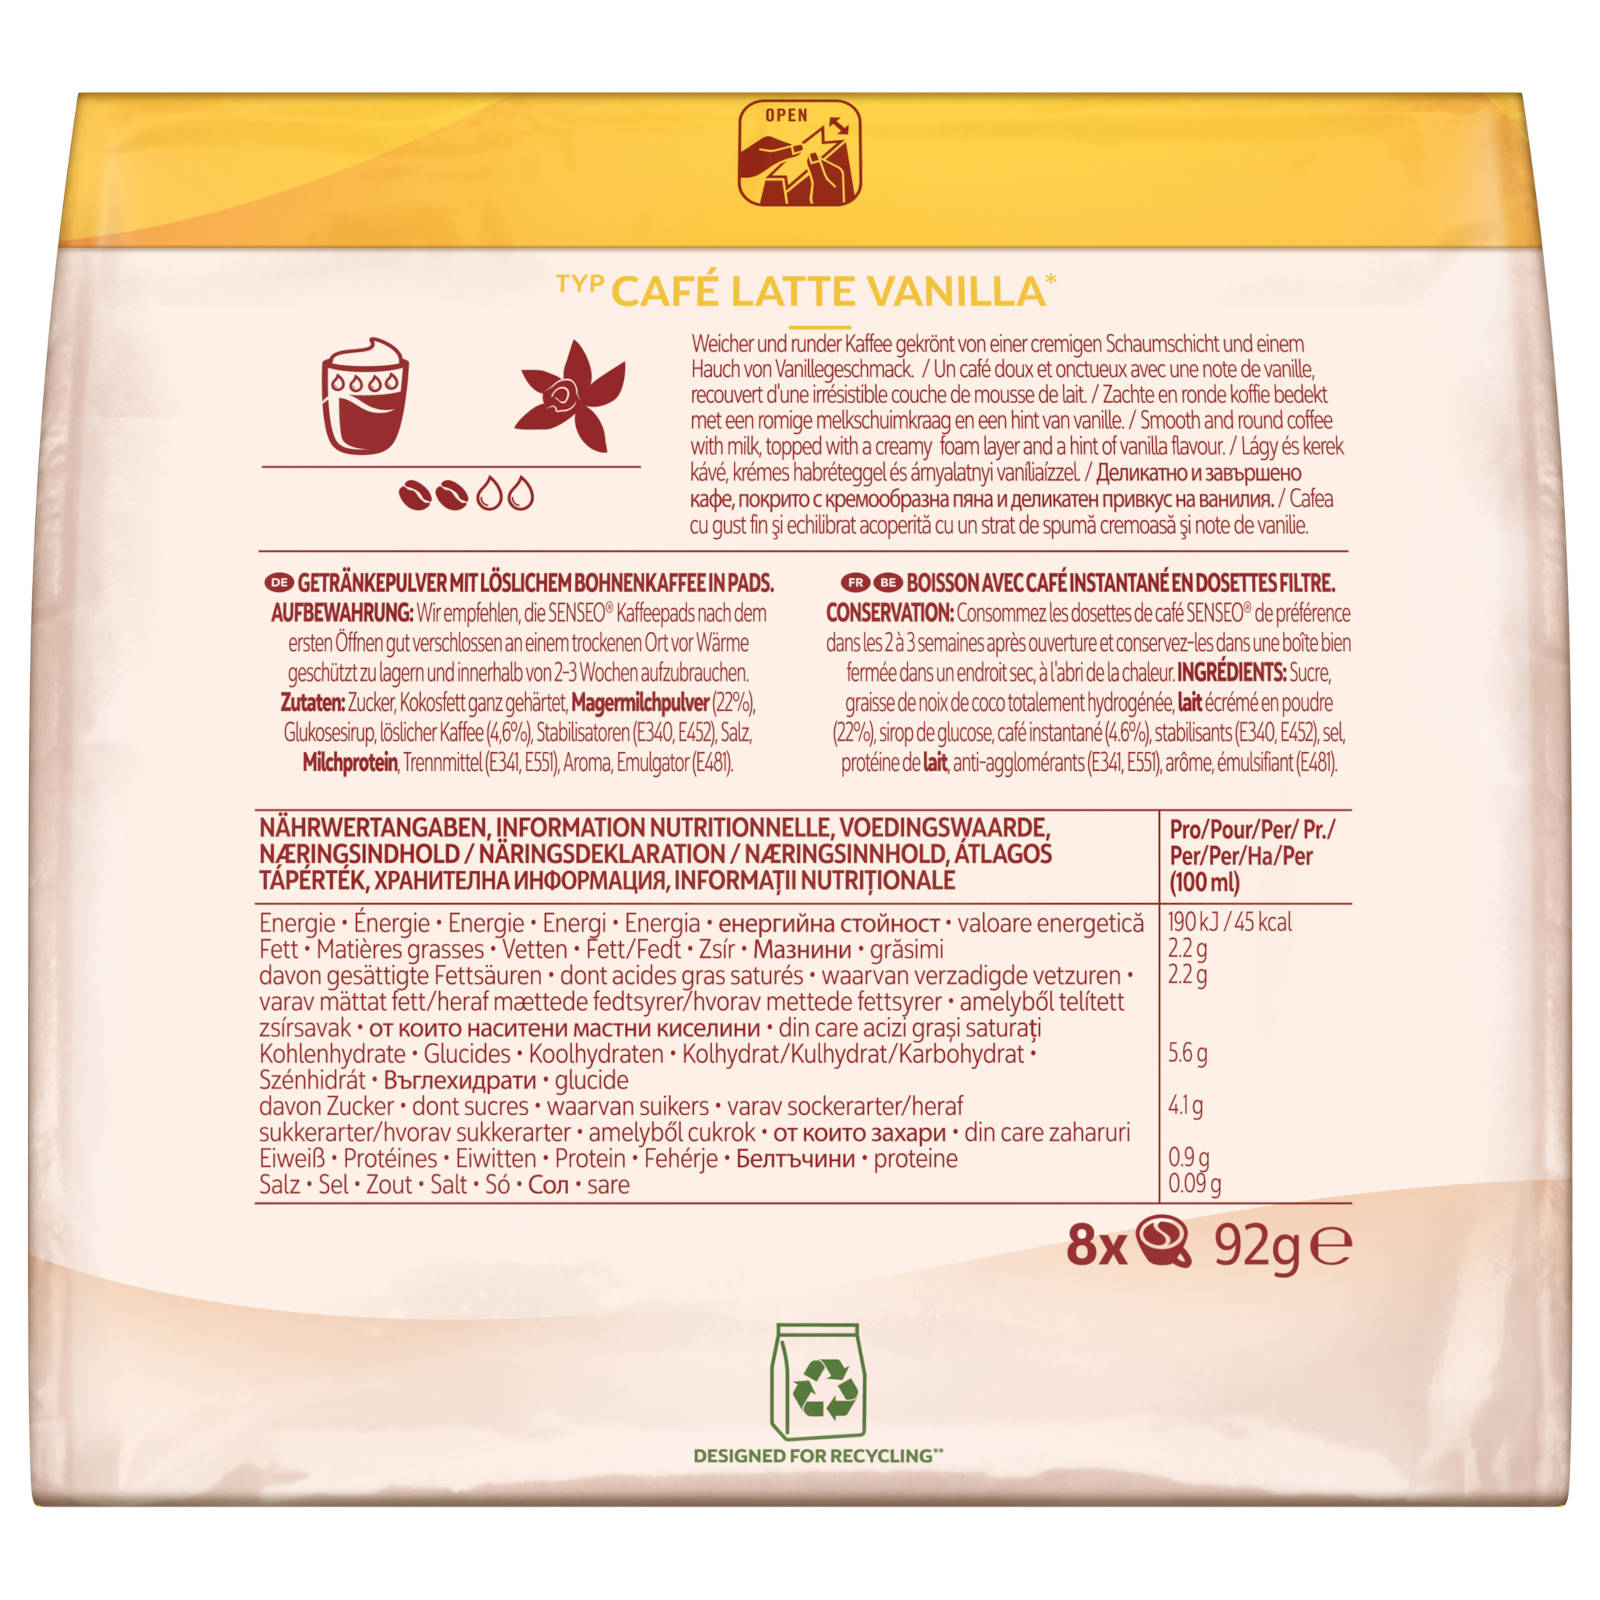 Getränke Vanilla 5 Pad-Maschine) Café Café 8 - Latte x Typ (Senseo 80 Latte 5 x 8 Kaffeepads Typ Portionen + SENSEO